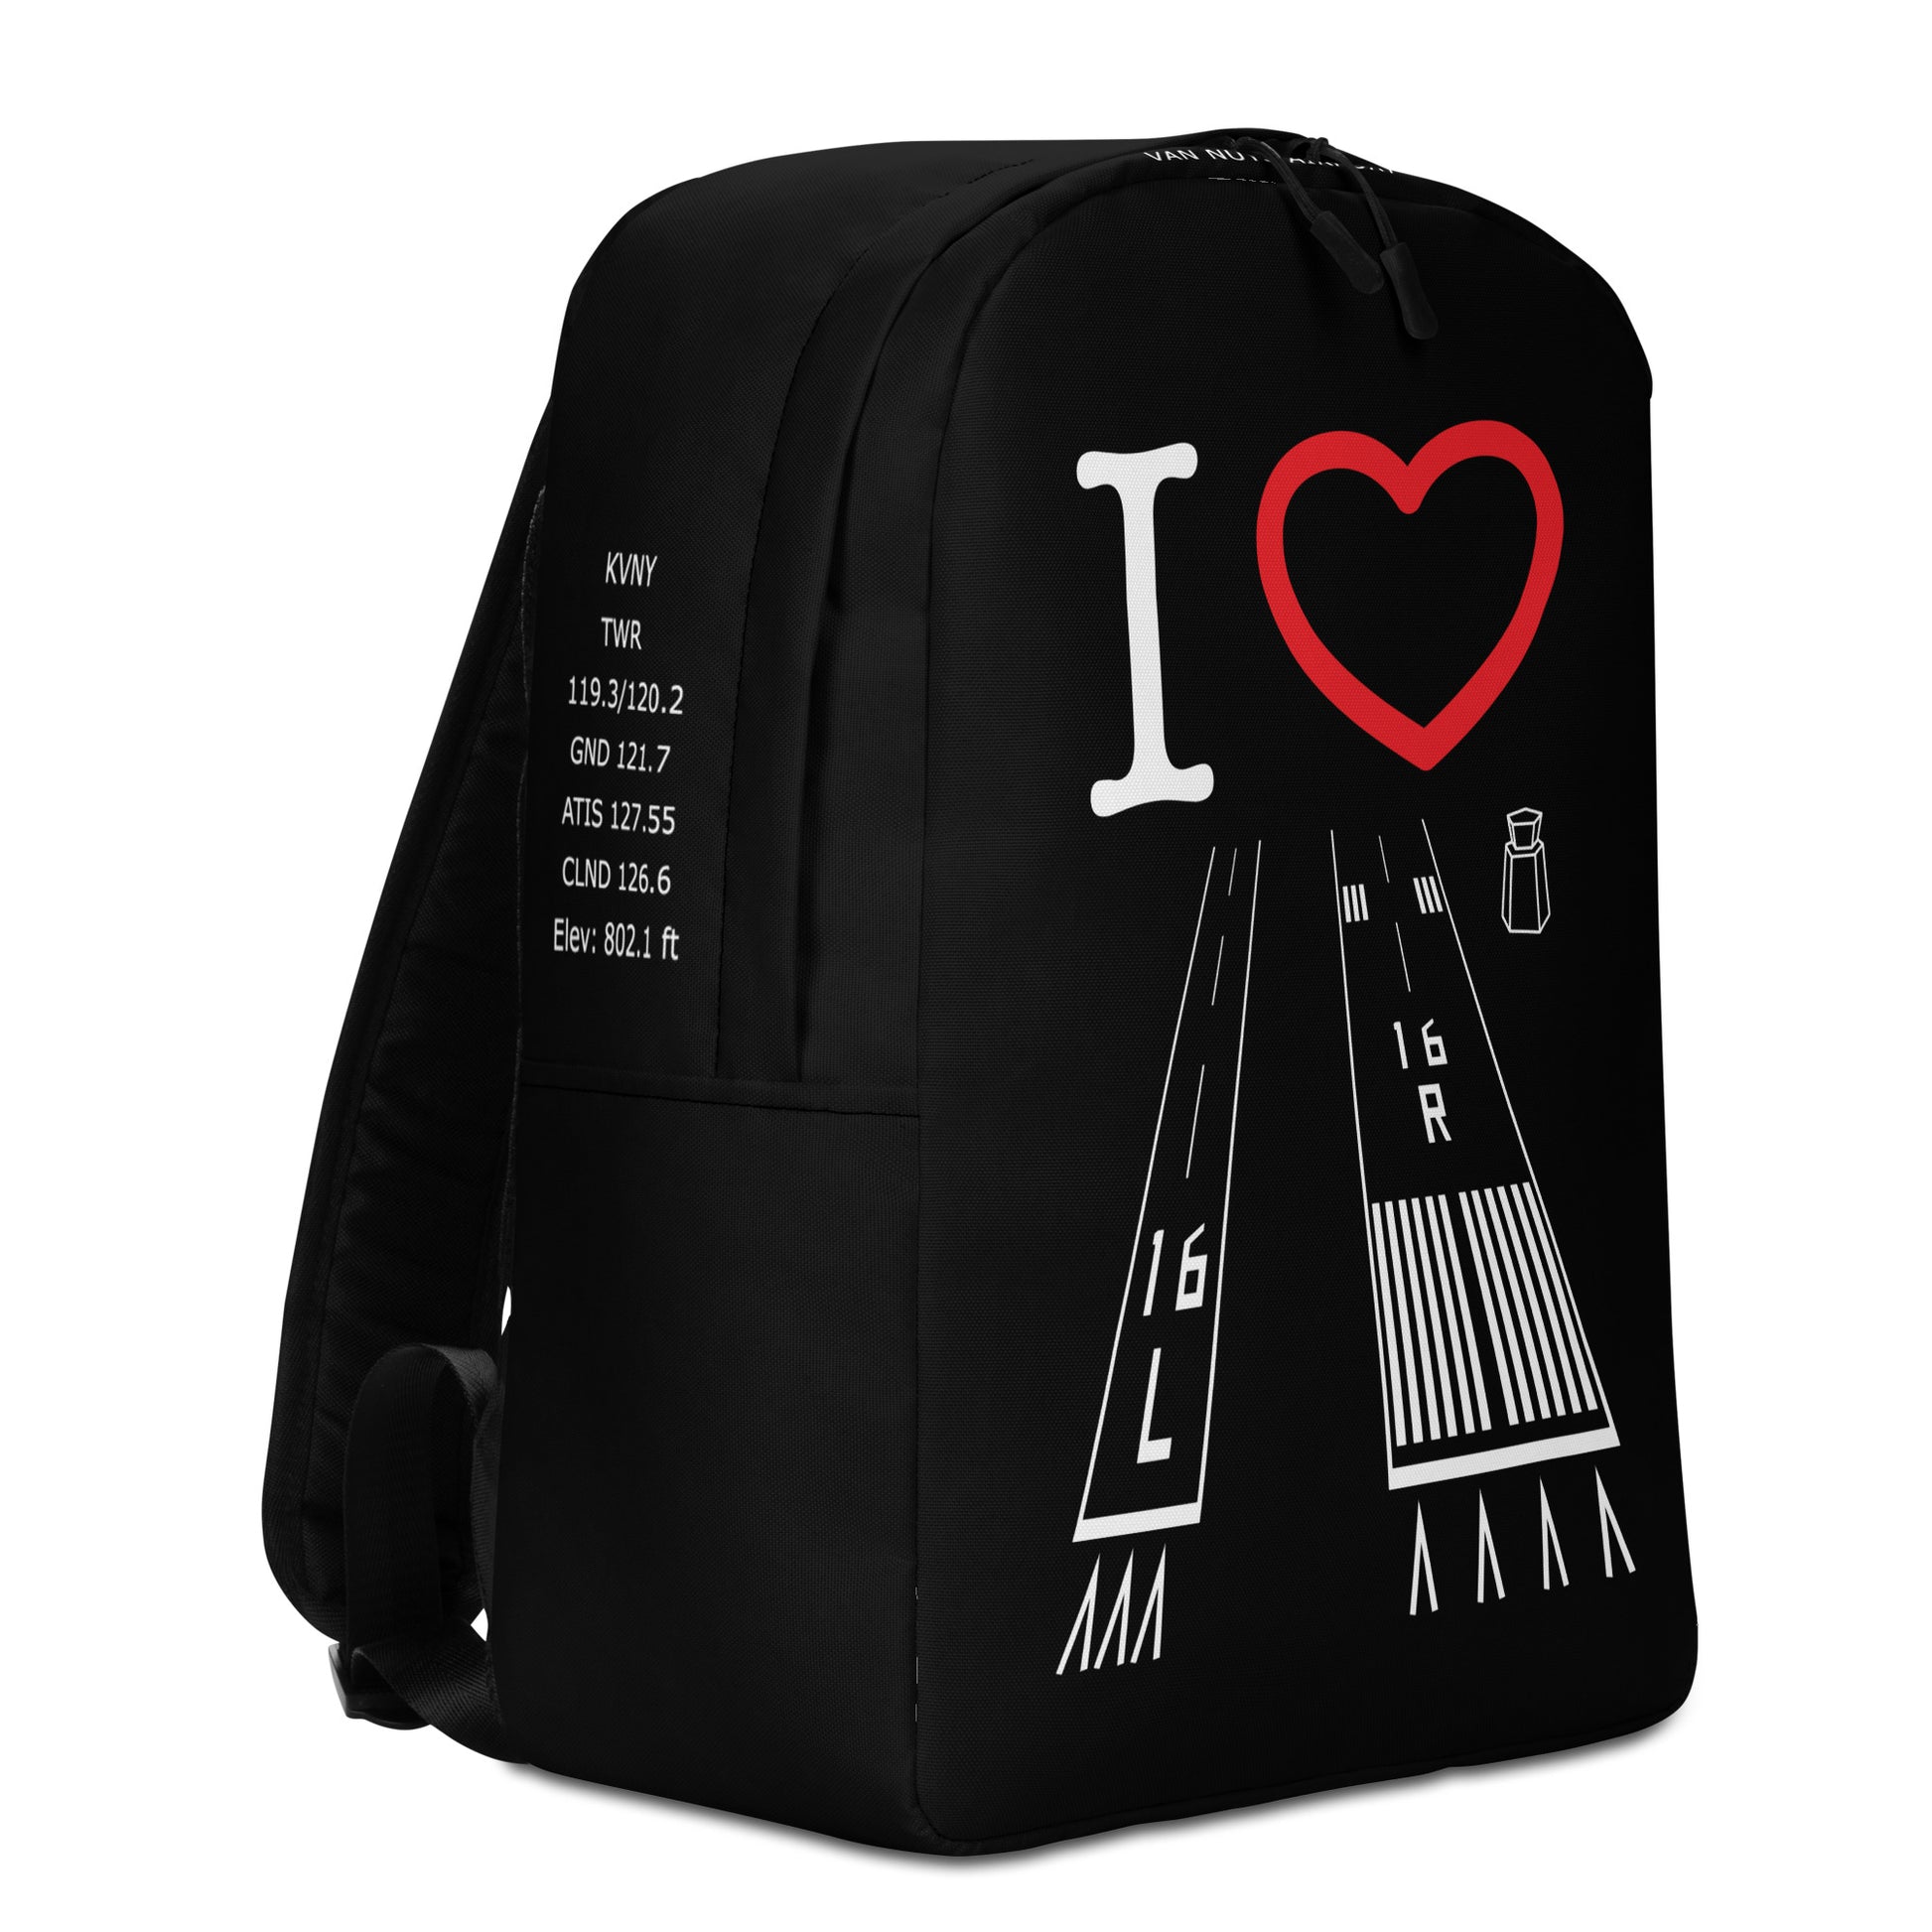 Van Nuys Airport Runways 16L / 16R - black minimalist backpack